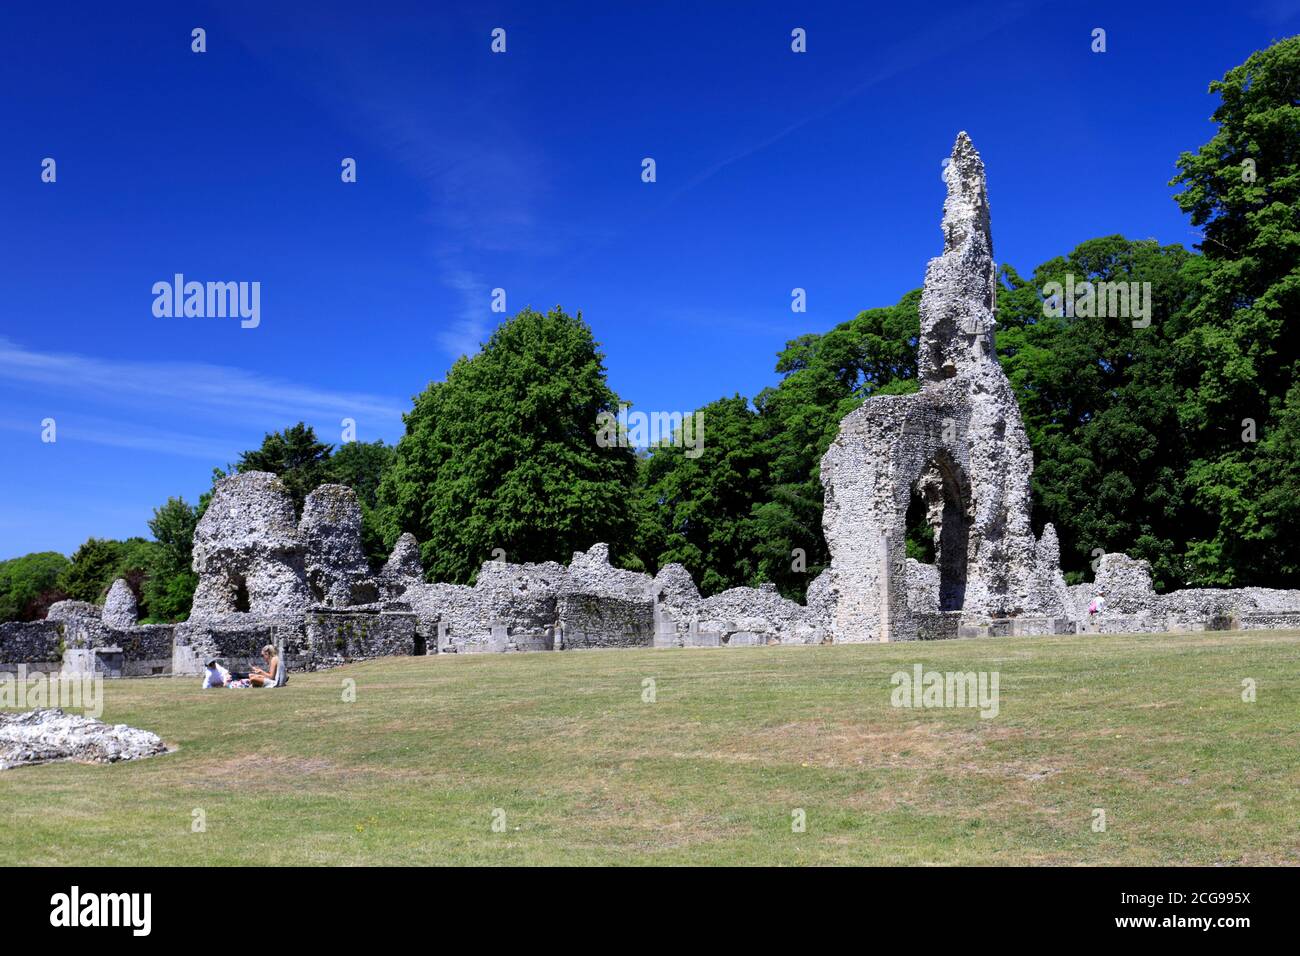 Les ruines du Prieuré de Thetford, l'un des plus importants monastères d'East Anglian, ville de Thetford, Norfolk, Angleterre, Royaume-Uni Banque D'Images